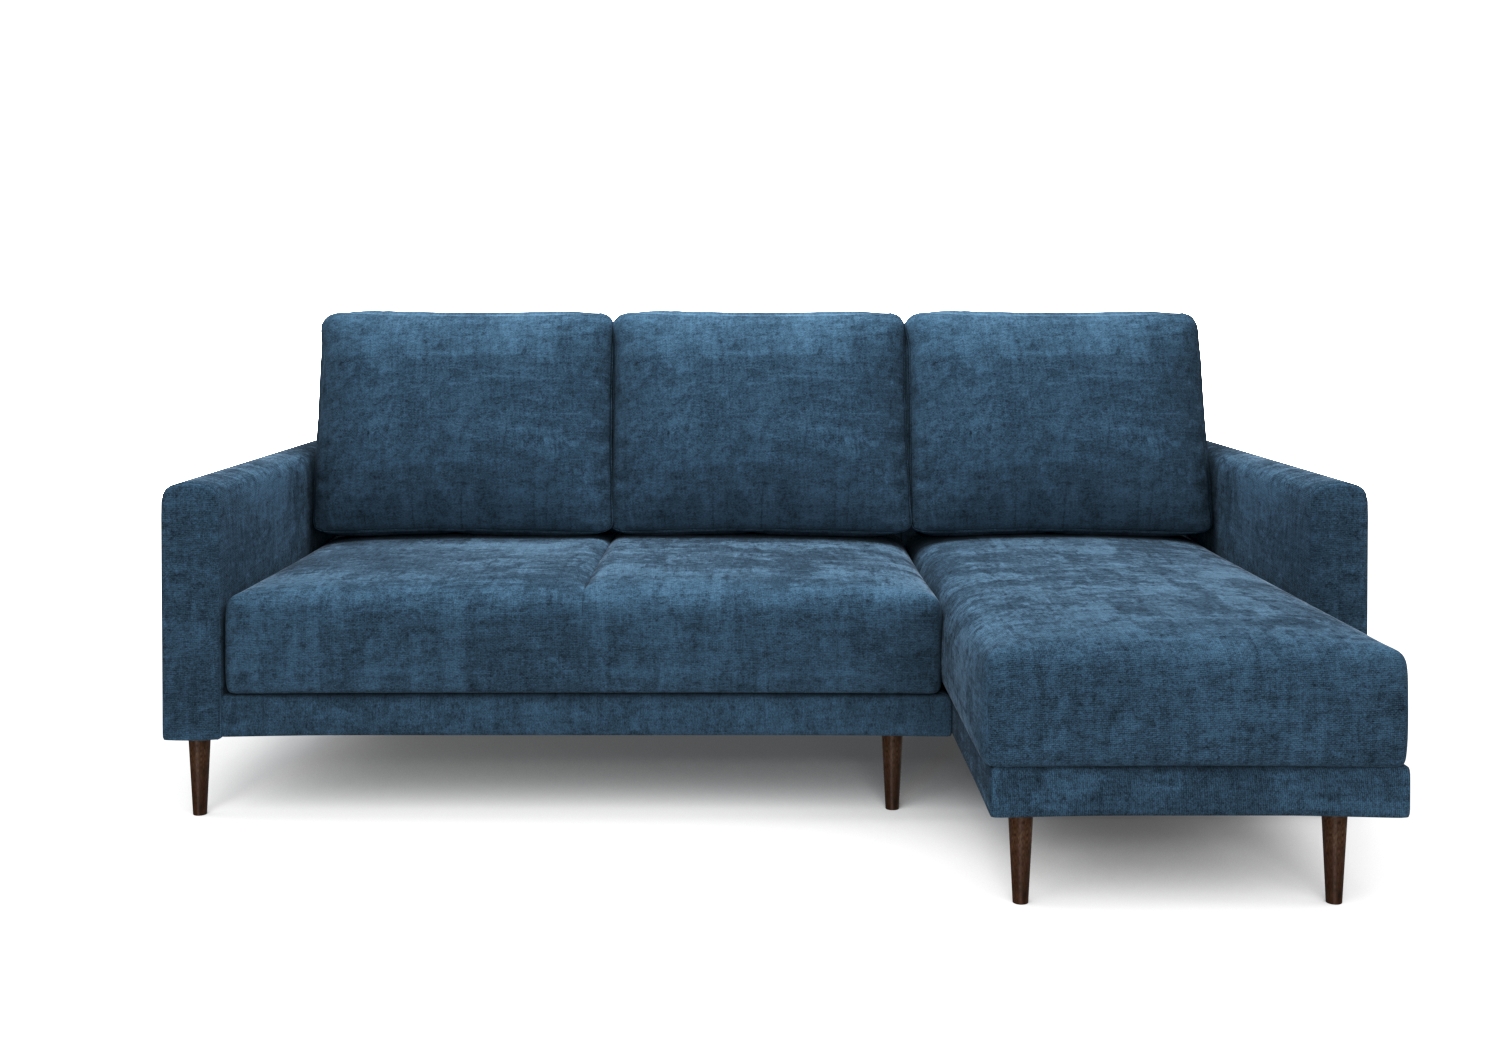 Ричи, угловой диван, Status 16 ткань Шенилл цвет Синий механизм трансформации Пантограф изображение 3